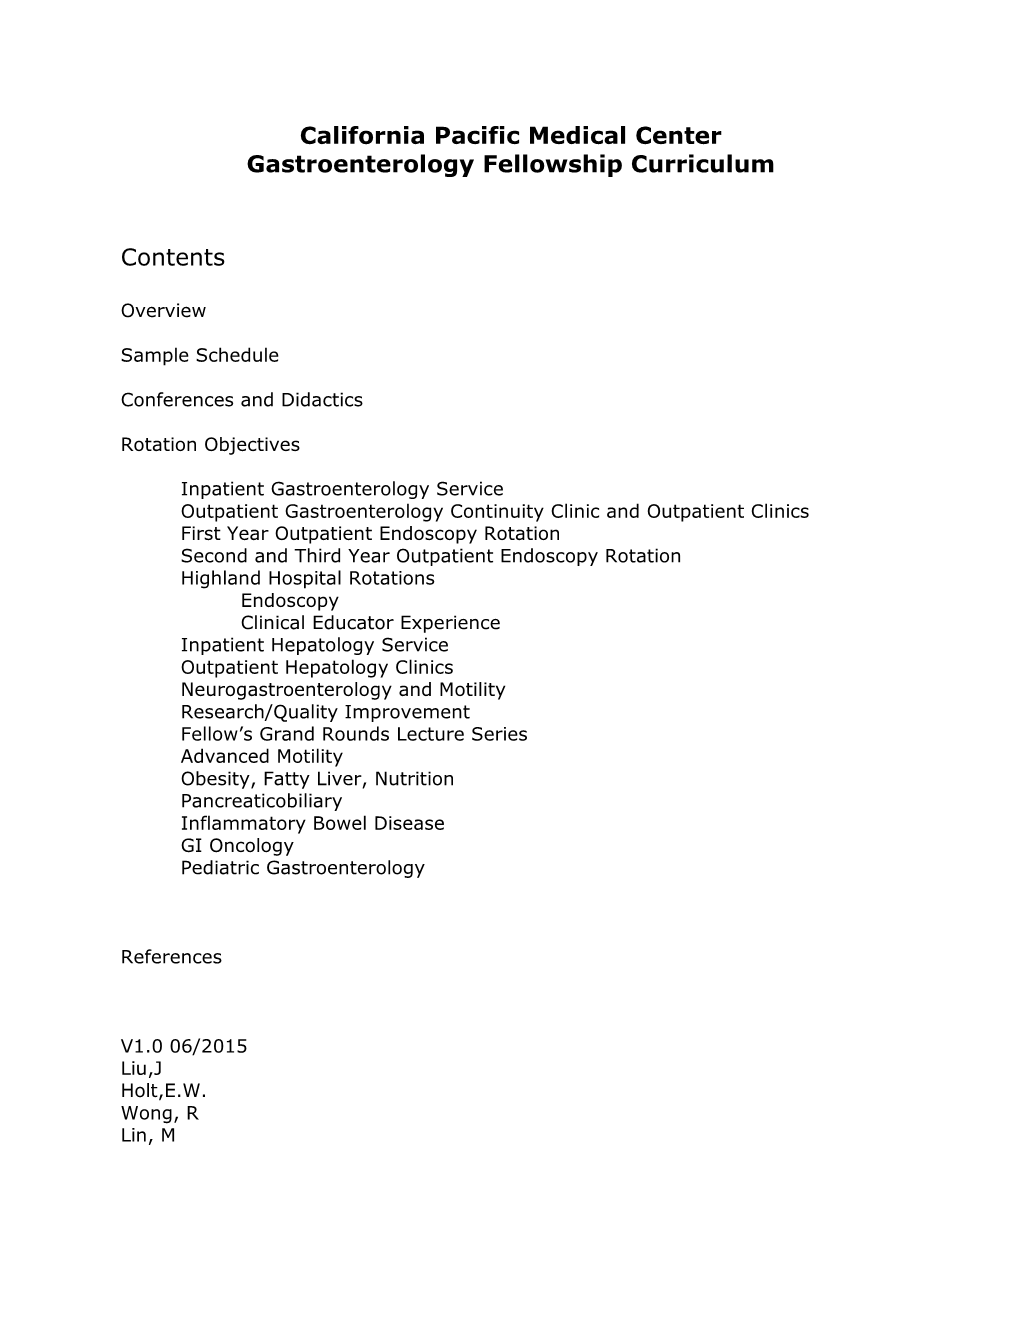 Gastroenterology Fellowship Curriculum